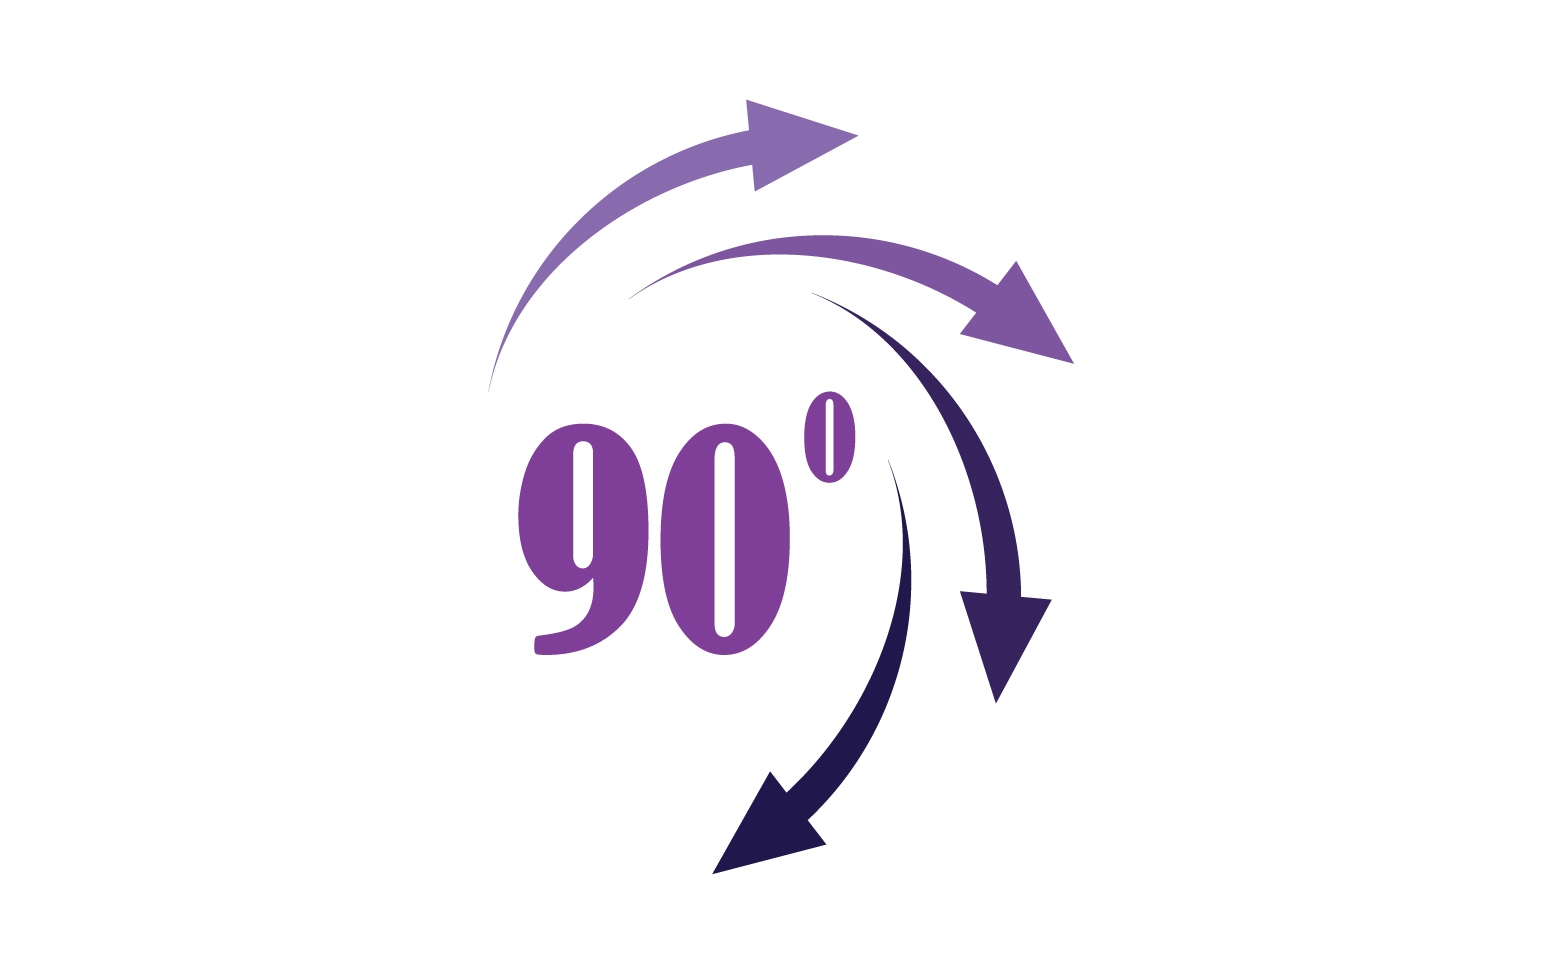 90 degree angle rotation icon symbol logo v53